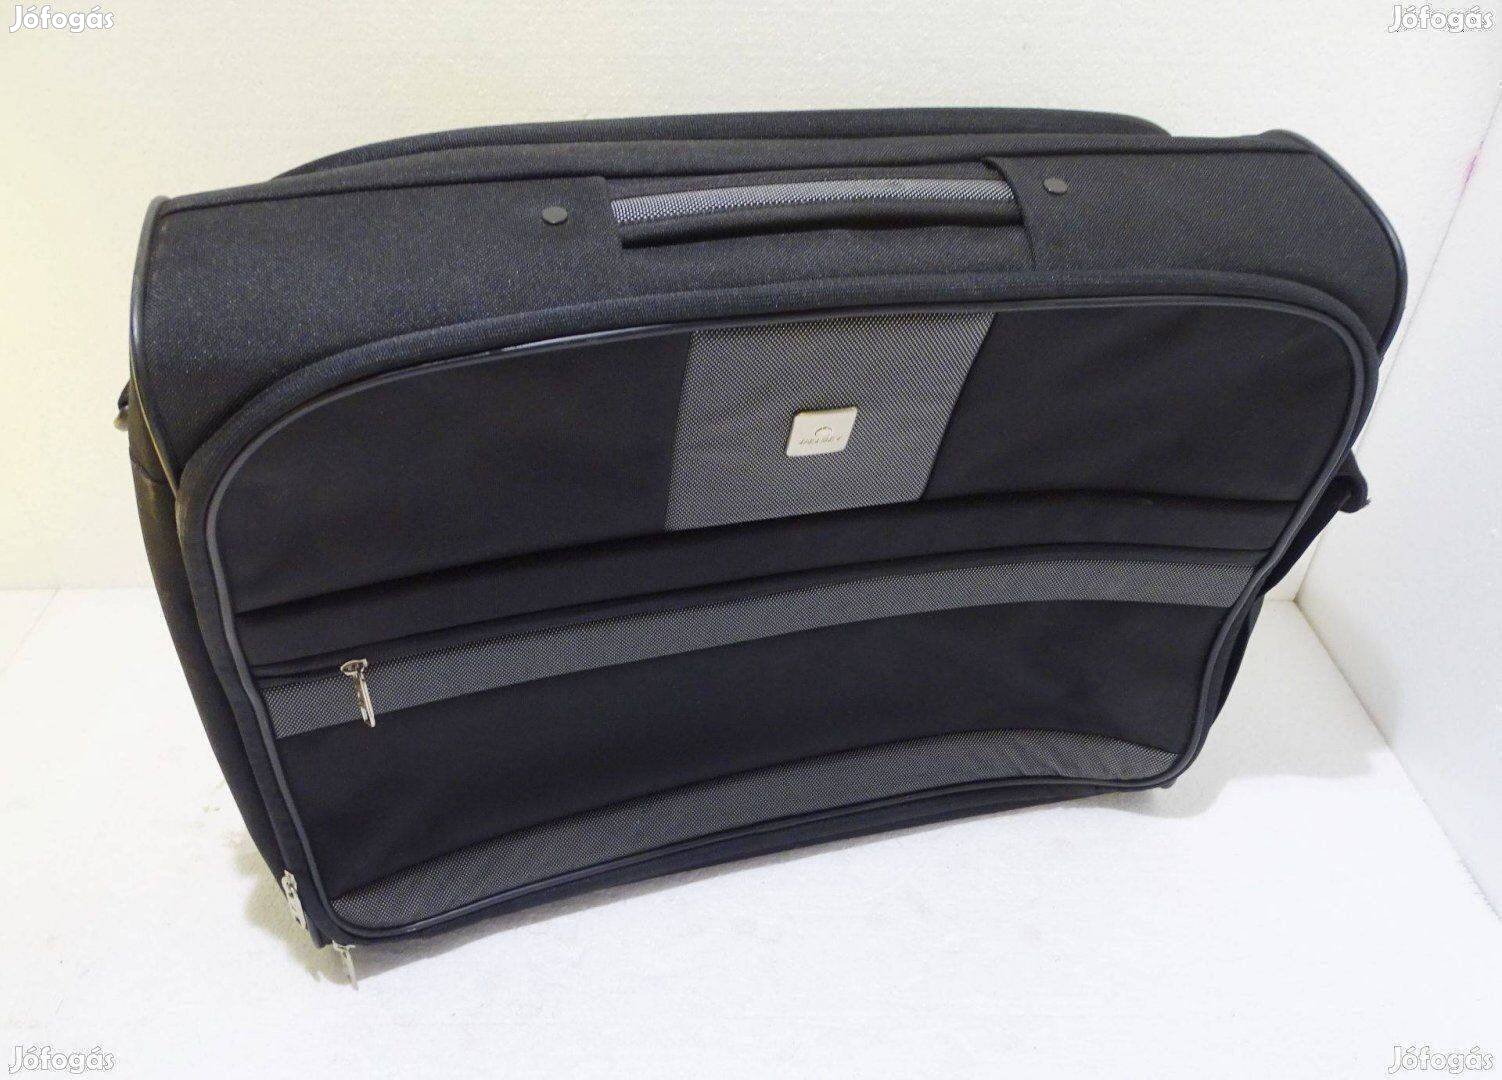 Delsey fekete bőrönd táska kézi poggyász utazótáska kézi táska